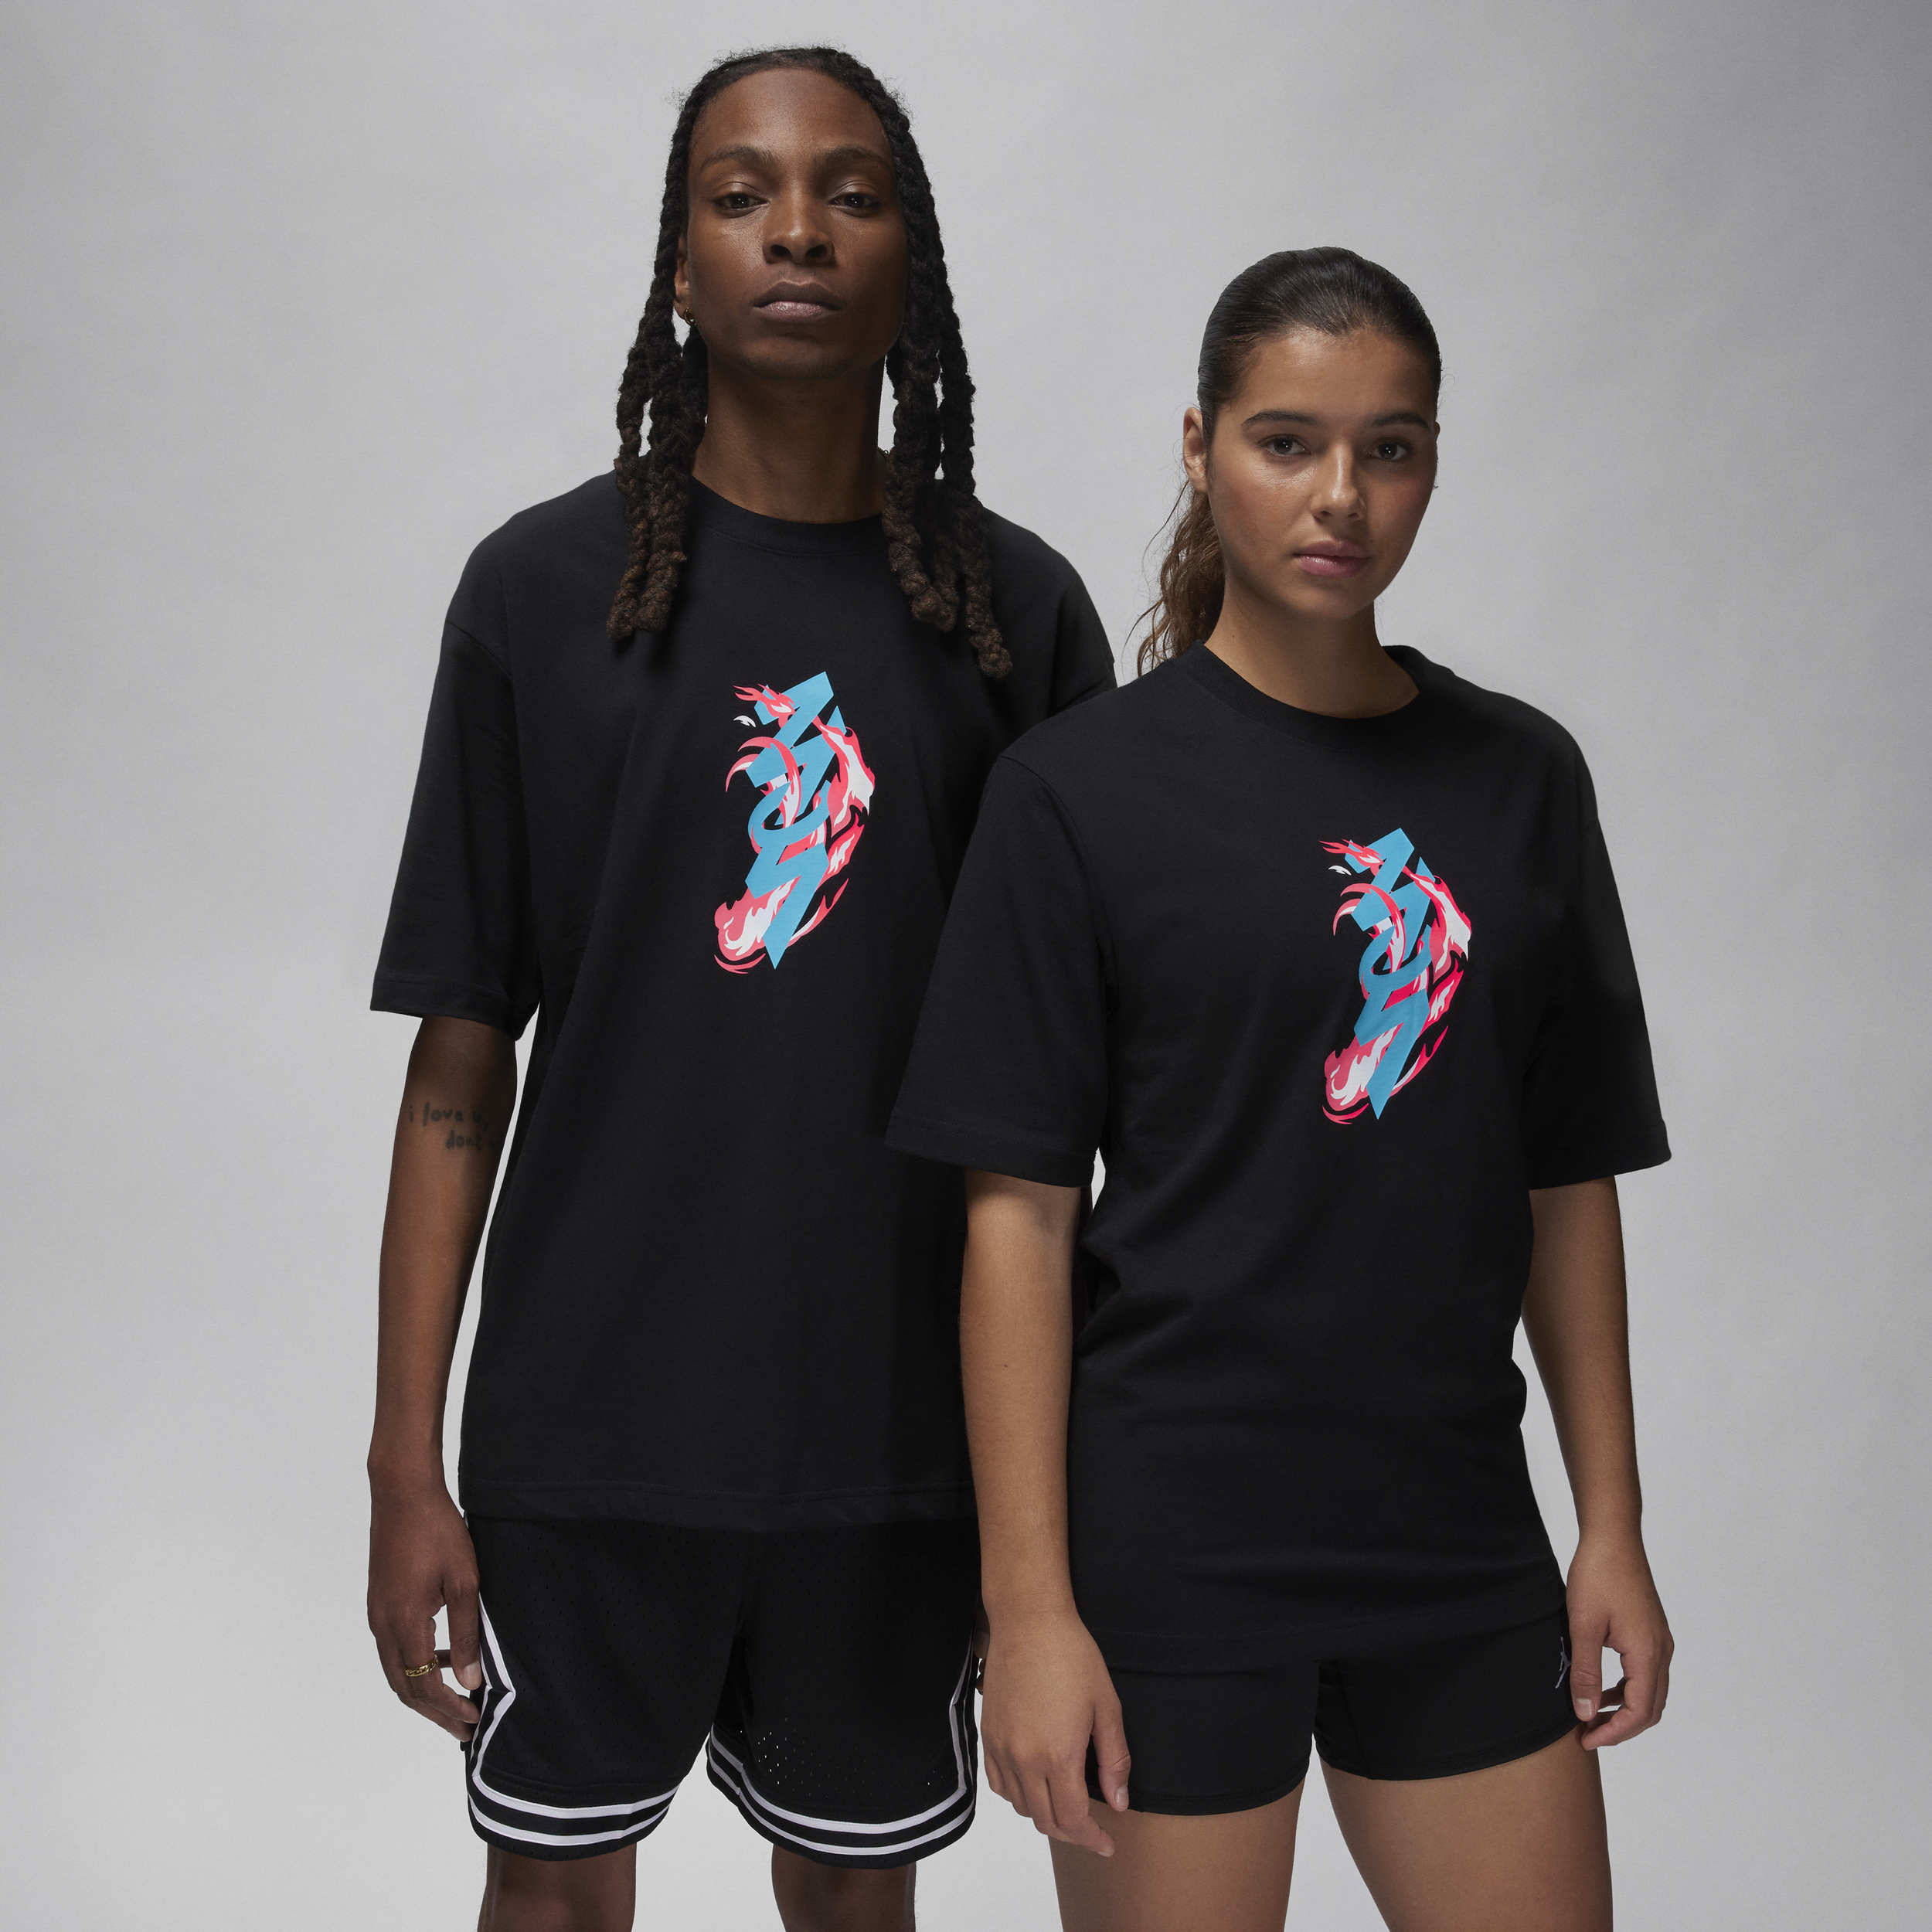 Nike Zion T-shirt - sort